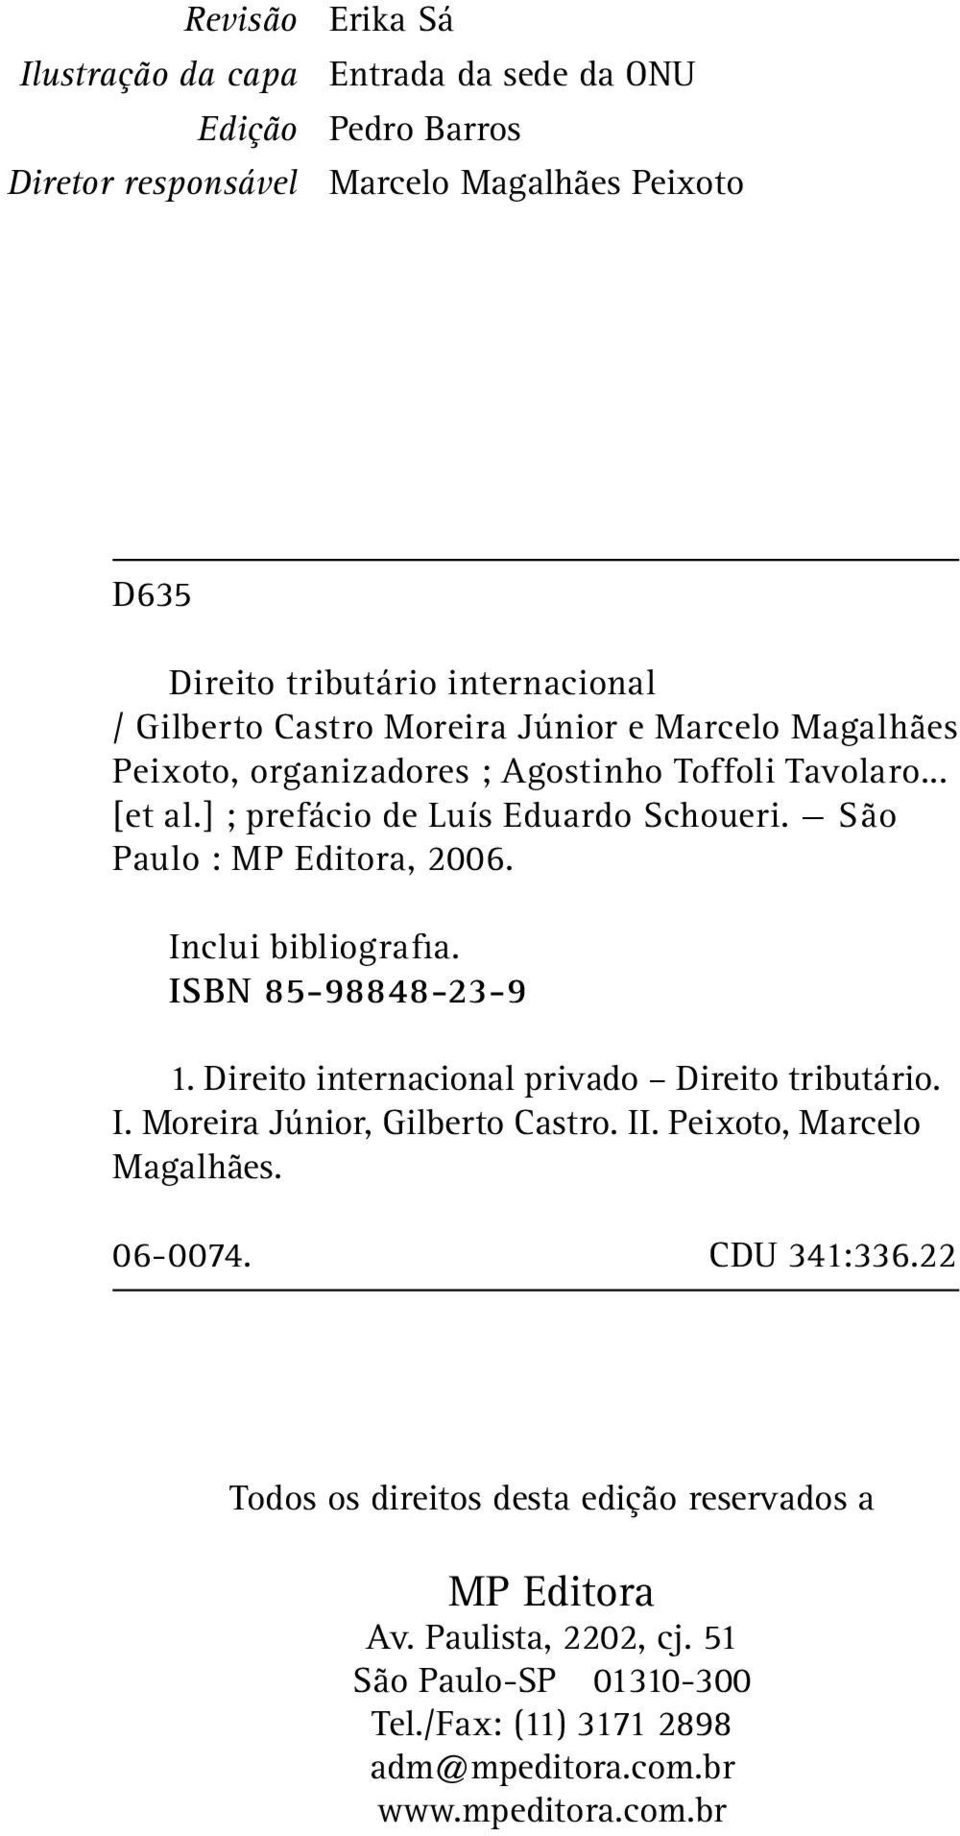 Inclui bibliografia. ISBN 85-98848-23-9 1. Direito internacional privado Direito tributário. I. Moreira Júnior, Gilberto Castro. II. Peixoto, Marcelo Magalhães. 06-0074.